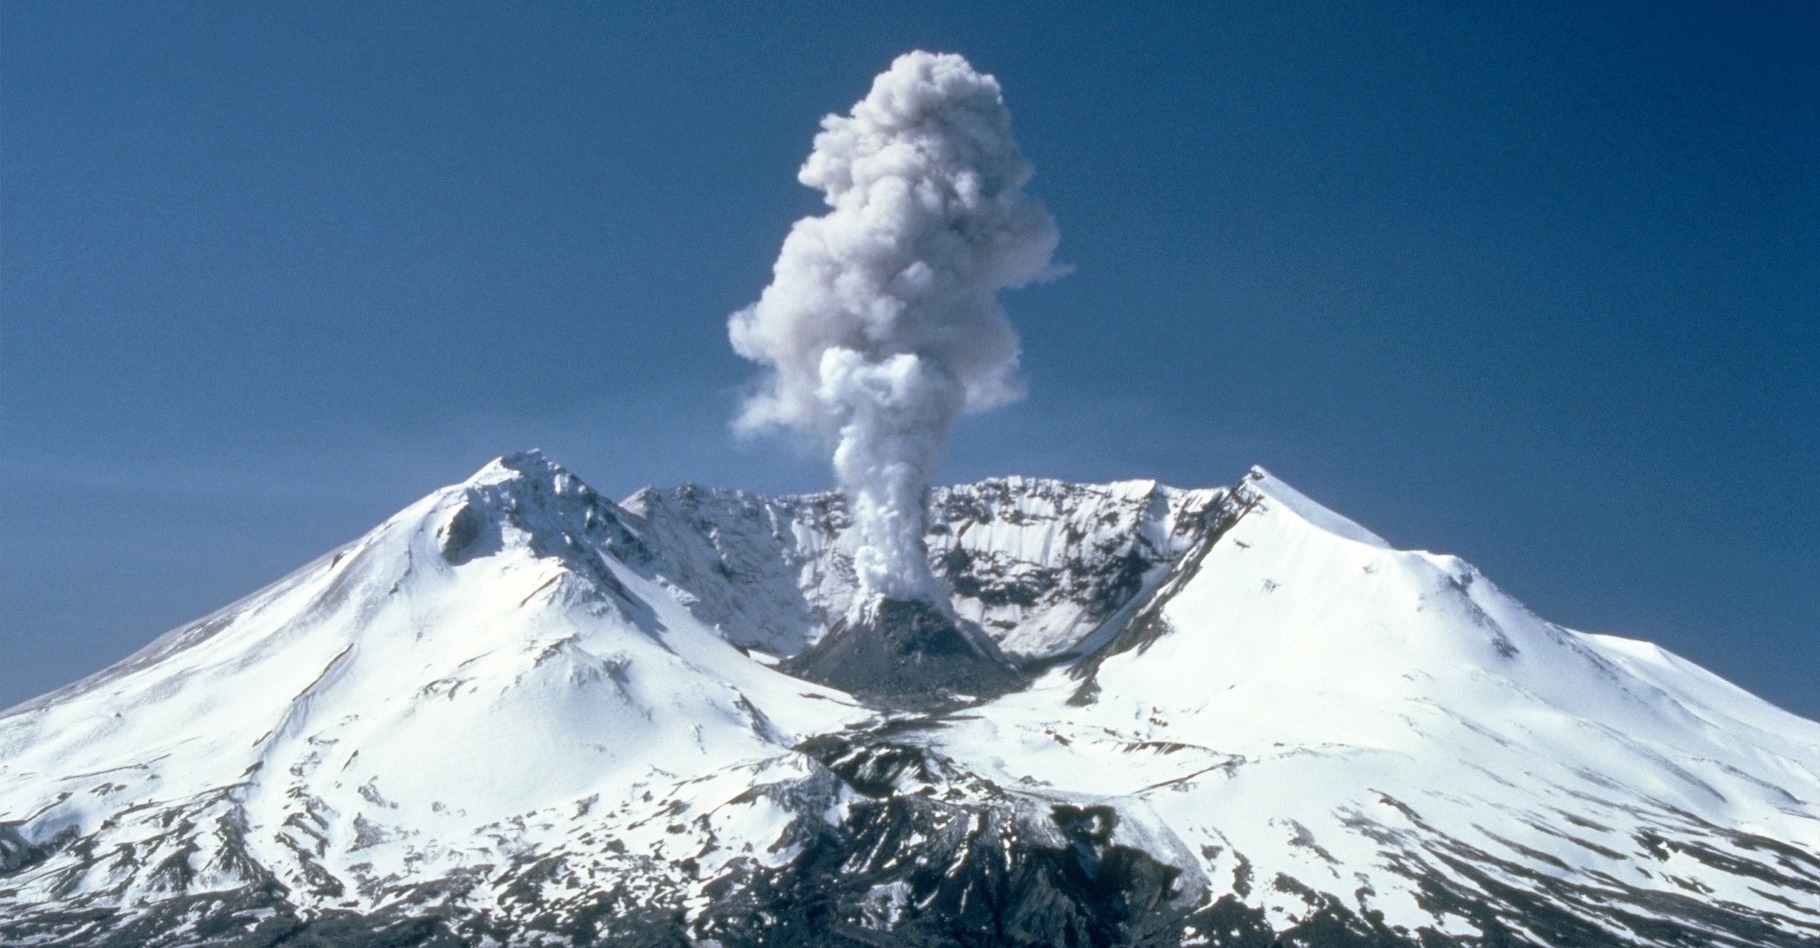 Les volcans émettent dans l’atmosphère, moins de CO2&nbsp;que les activités humaines. ©&nbsp;WikiImages, Pixabay, CC0 Creative Commons